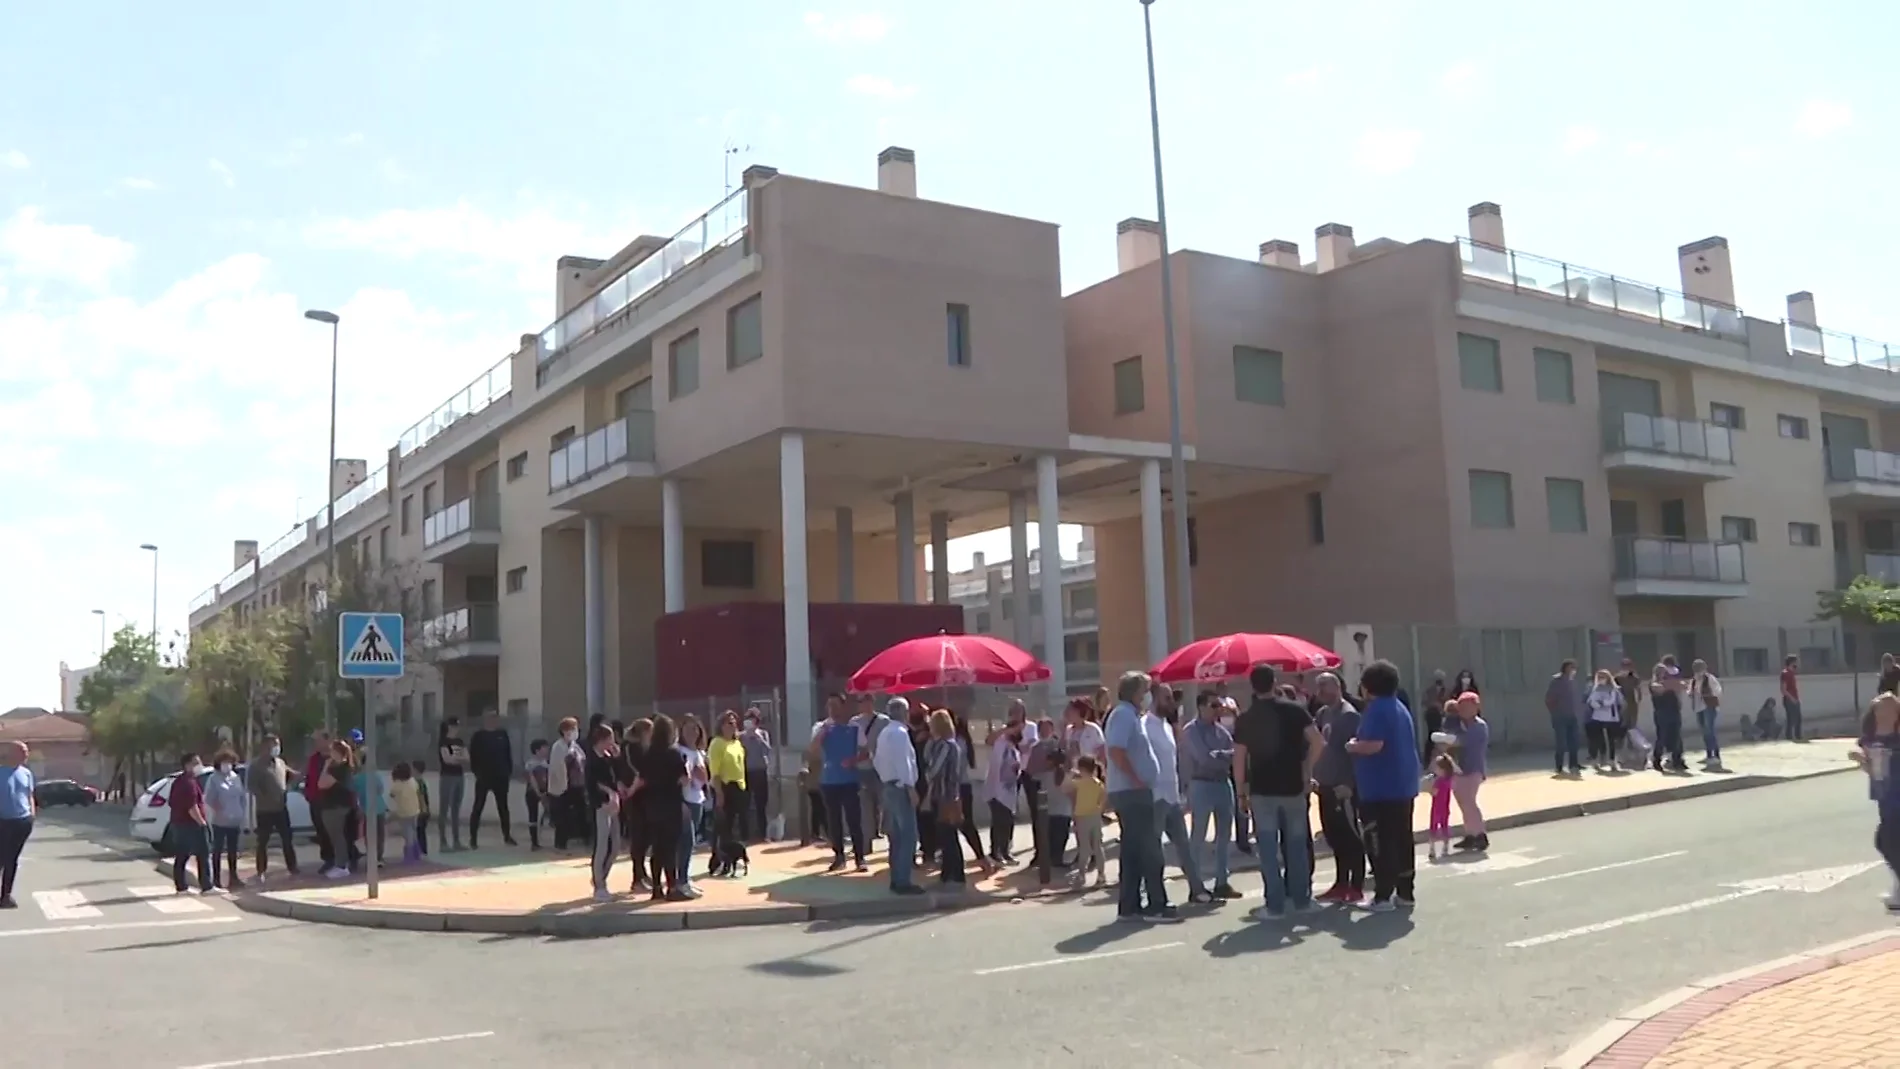 Piquete vecinal para evitar la okupación en Murcia